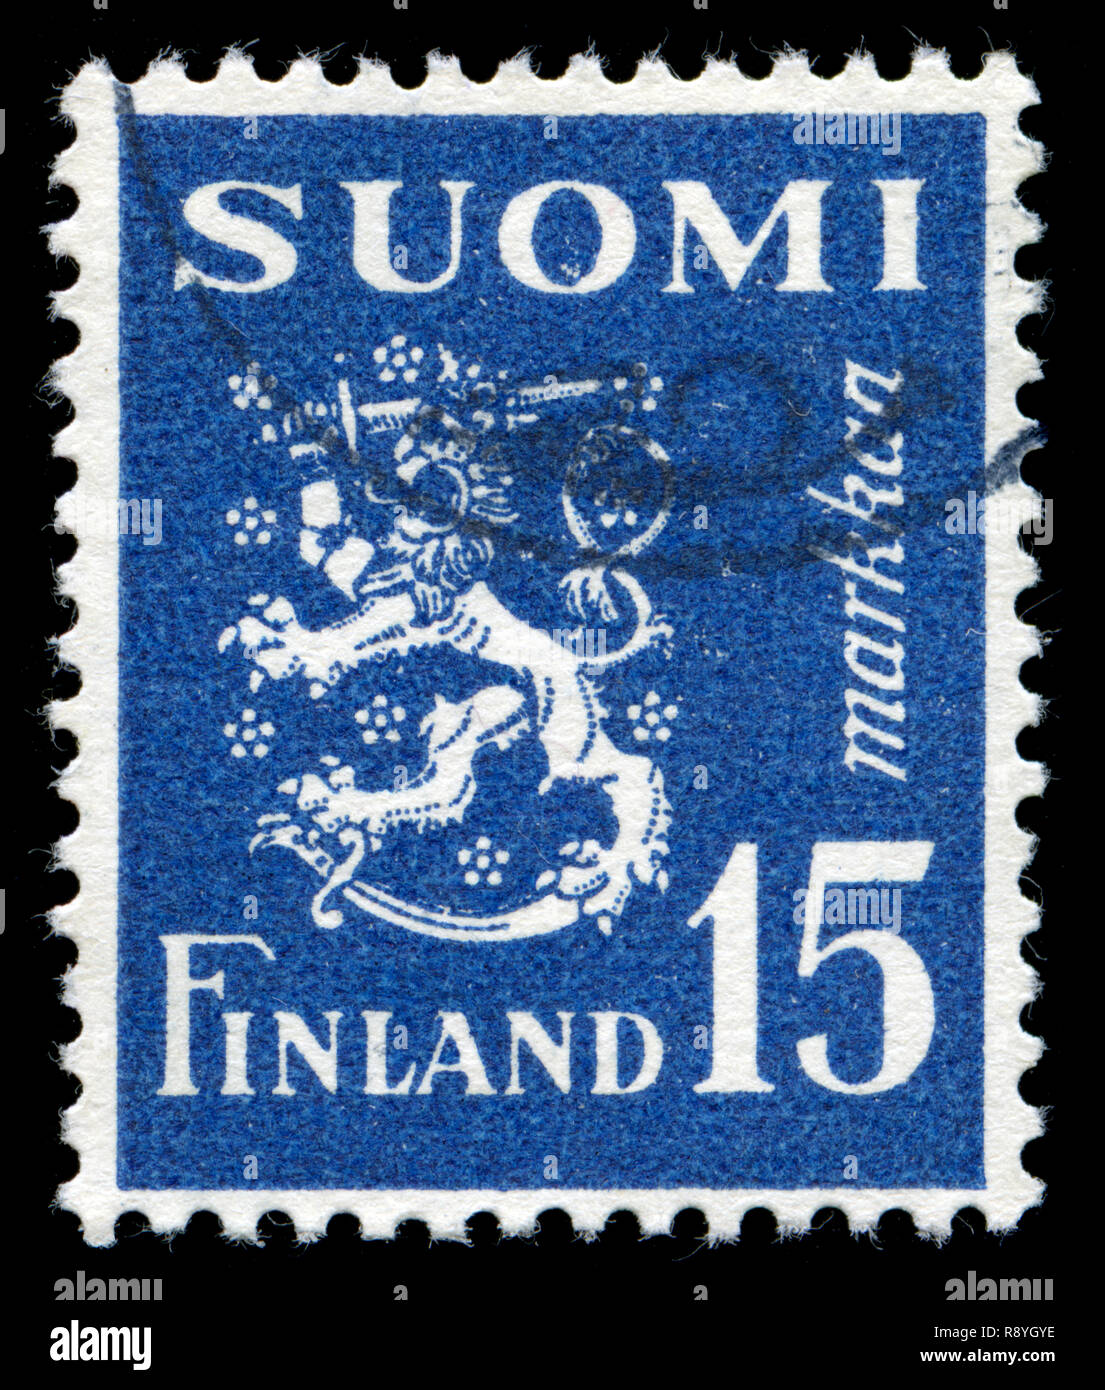 Timbre-poste de la Finlande dans le modèle 1930 Lion série émise en 1948 Banque D'Images